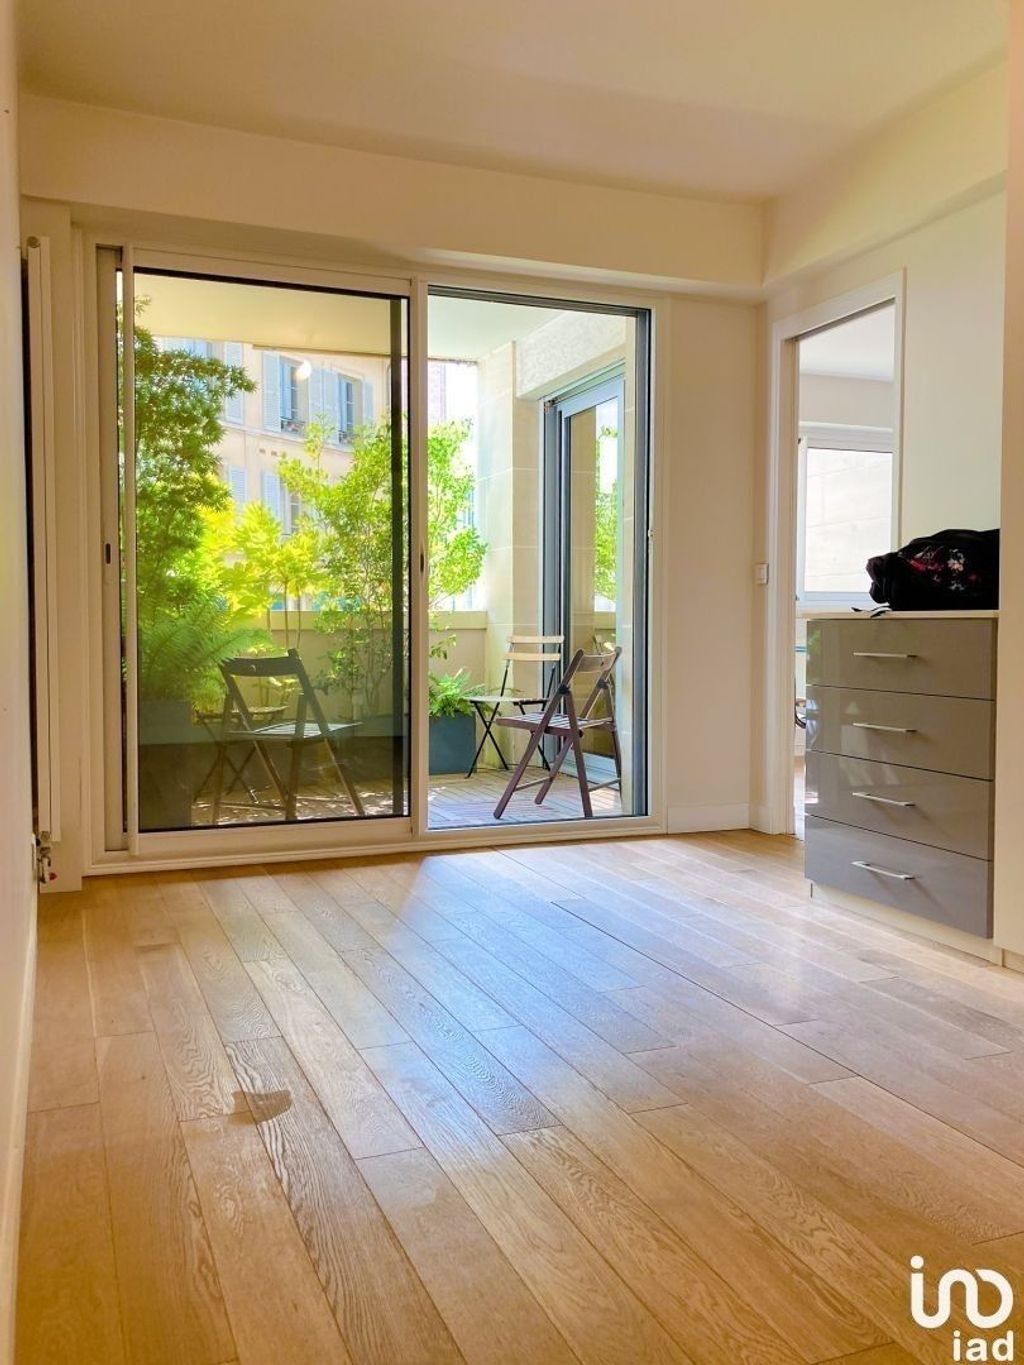 Achat appartement 4 pièces 100 m² - Saint-Germain-en-Laye